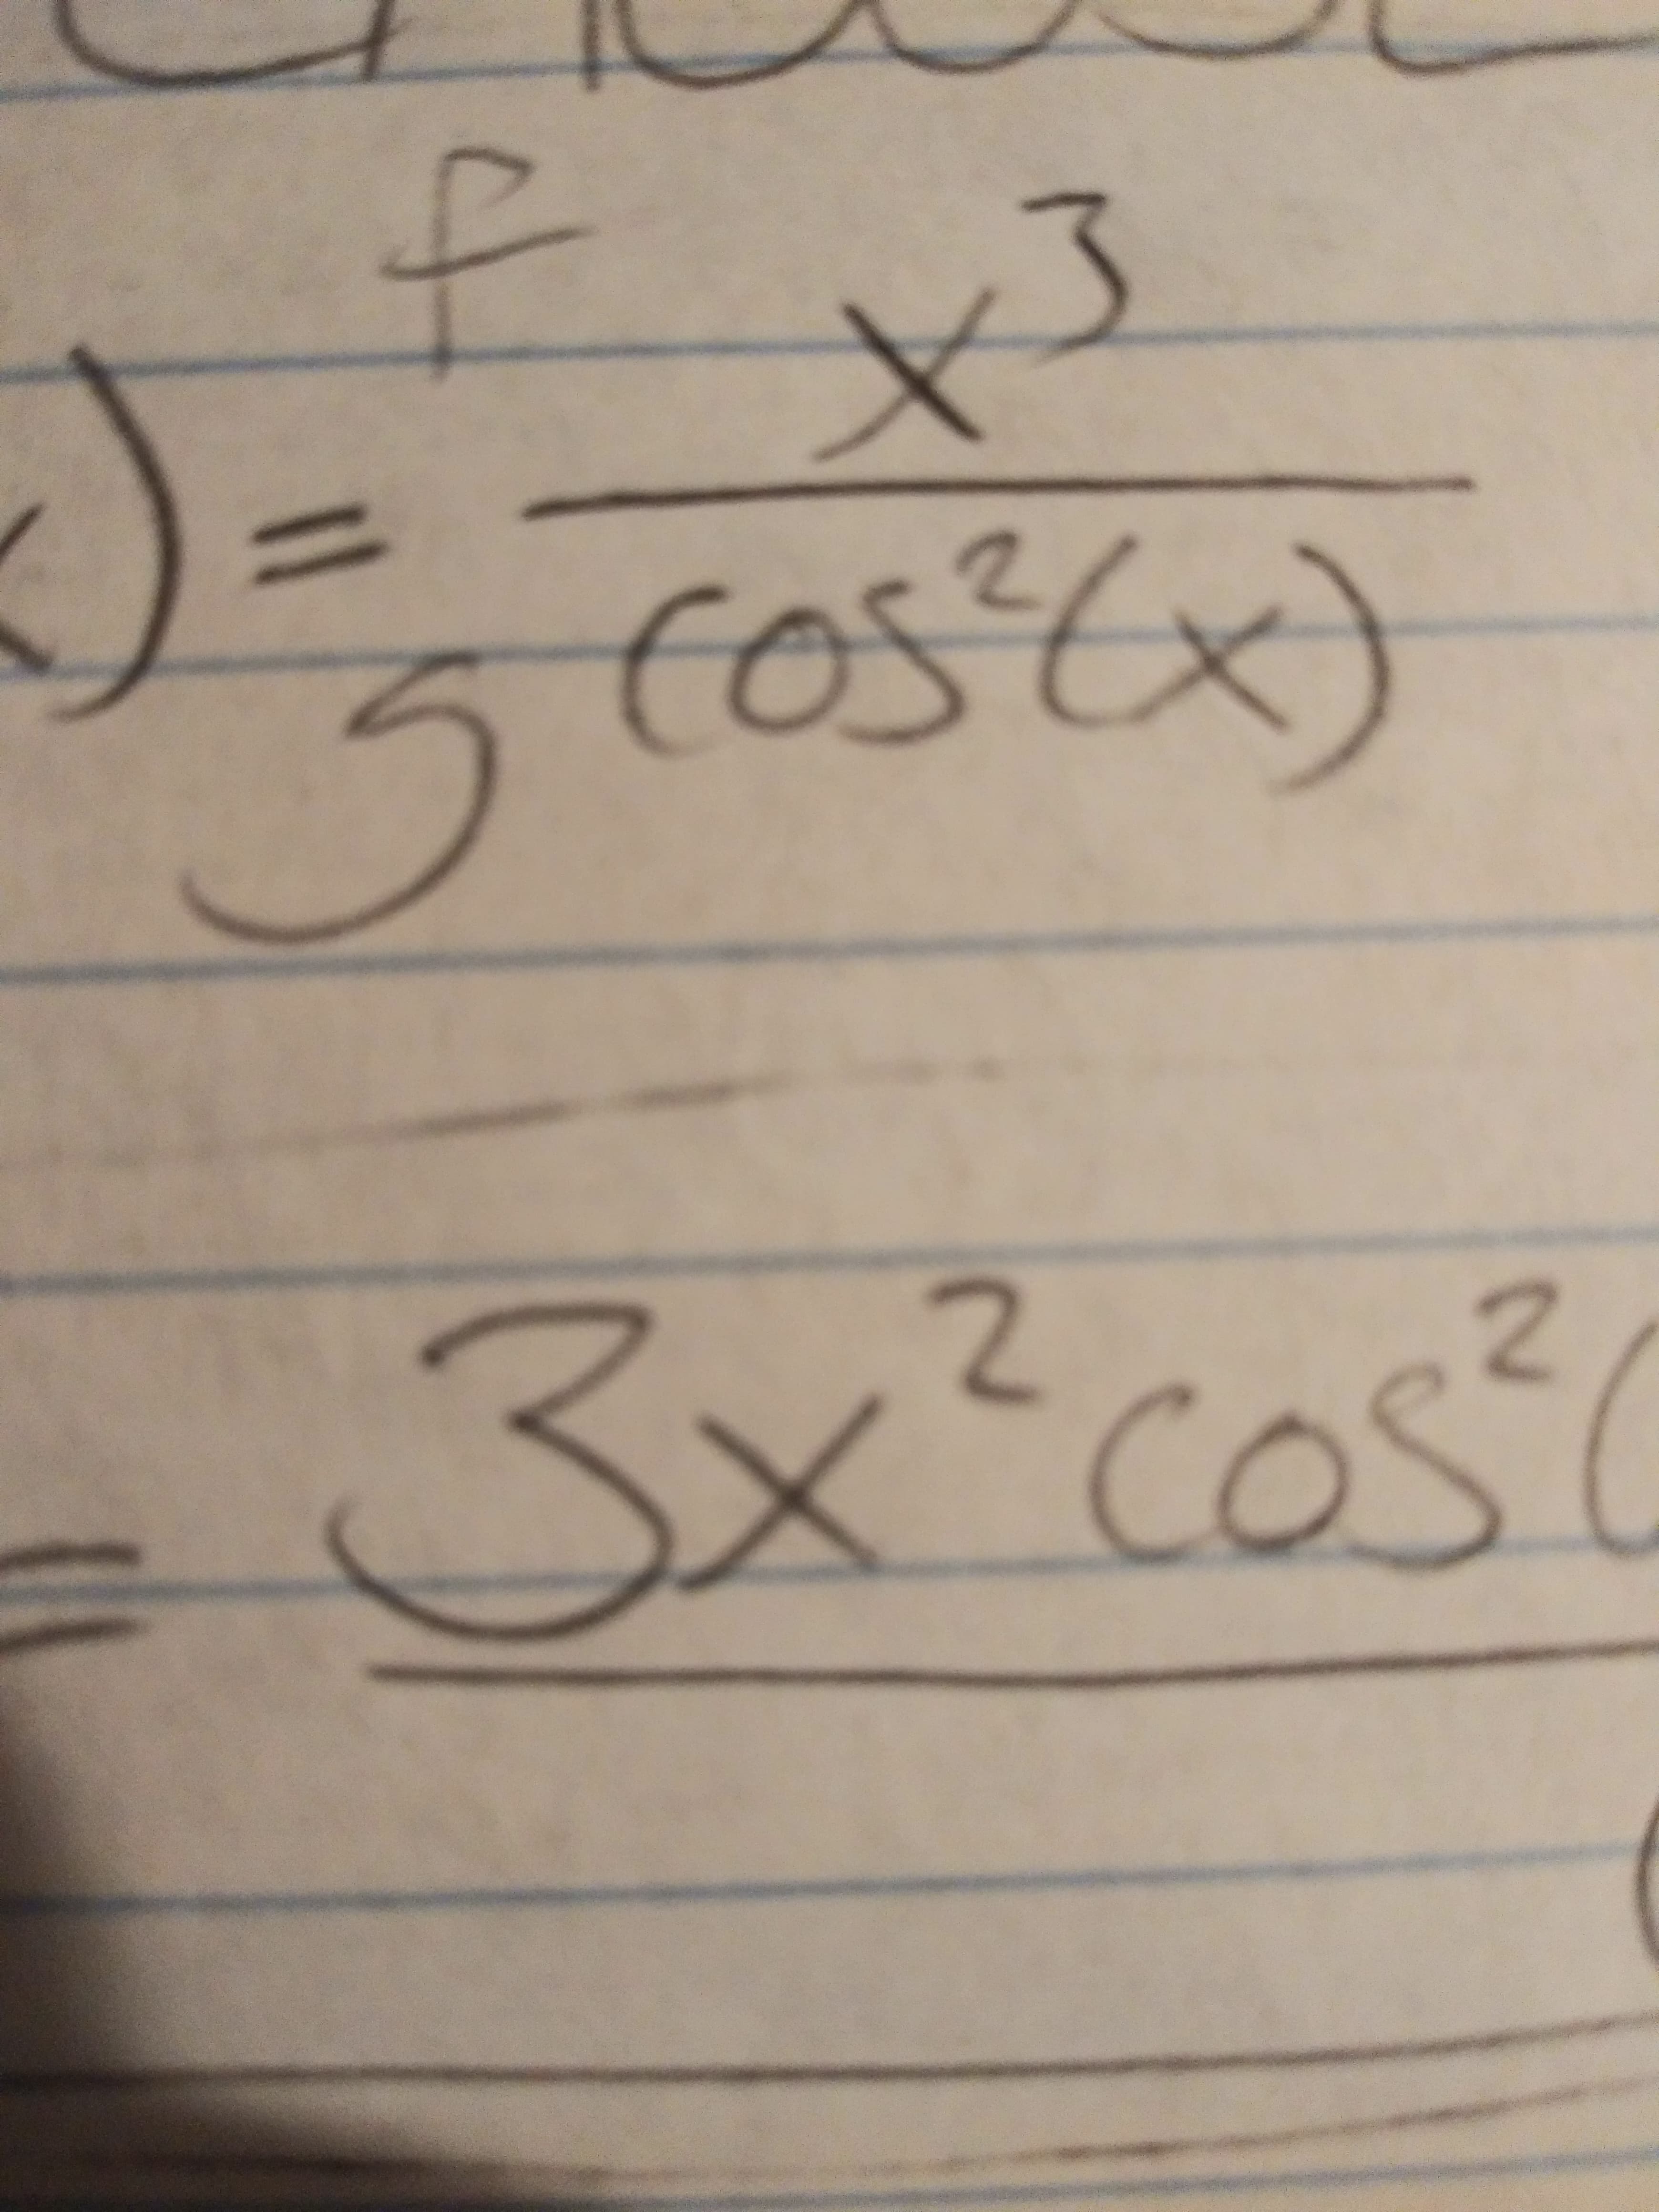 %3D
c05(x)
3x²cos
?cos(
2.
